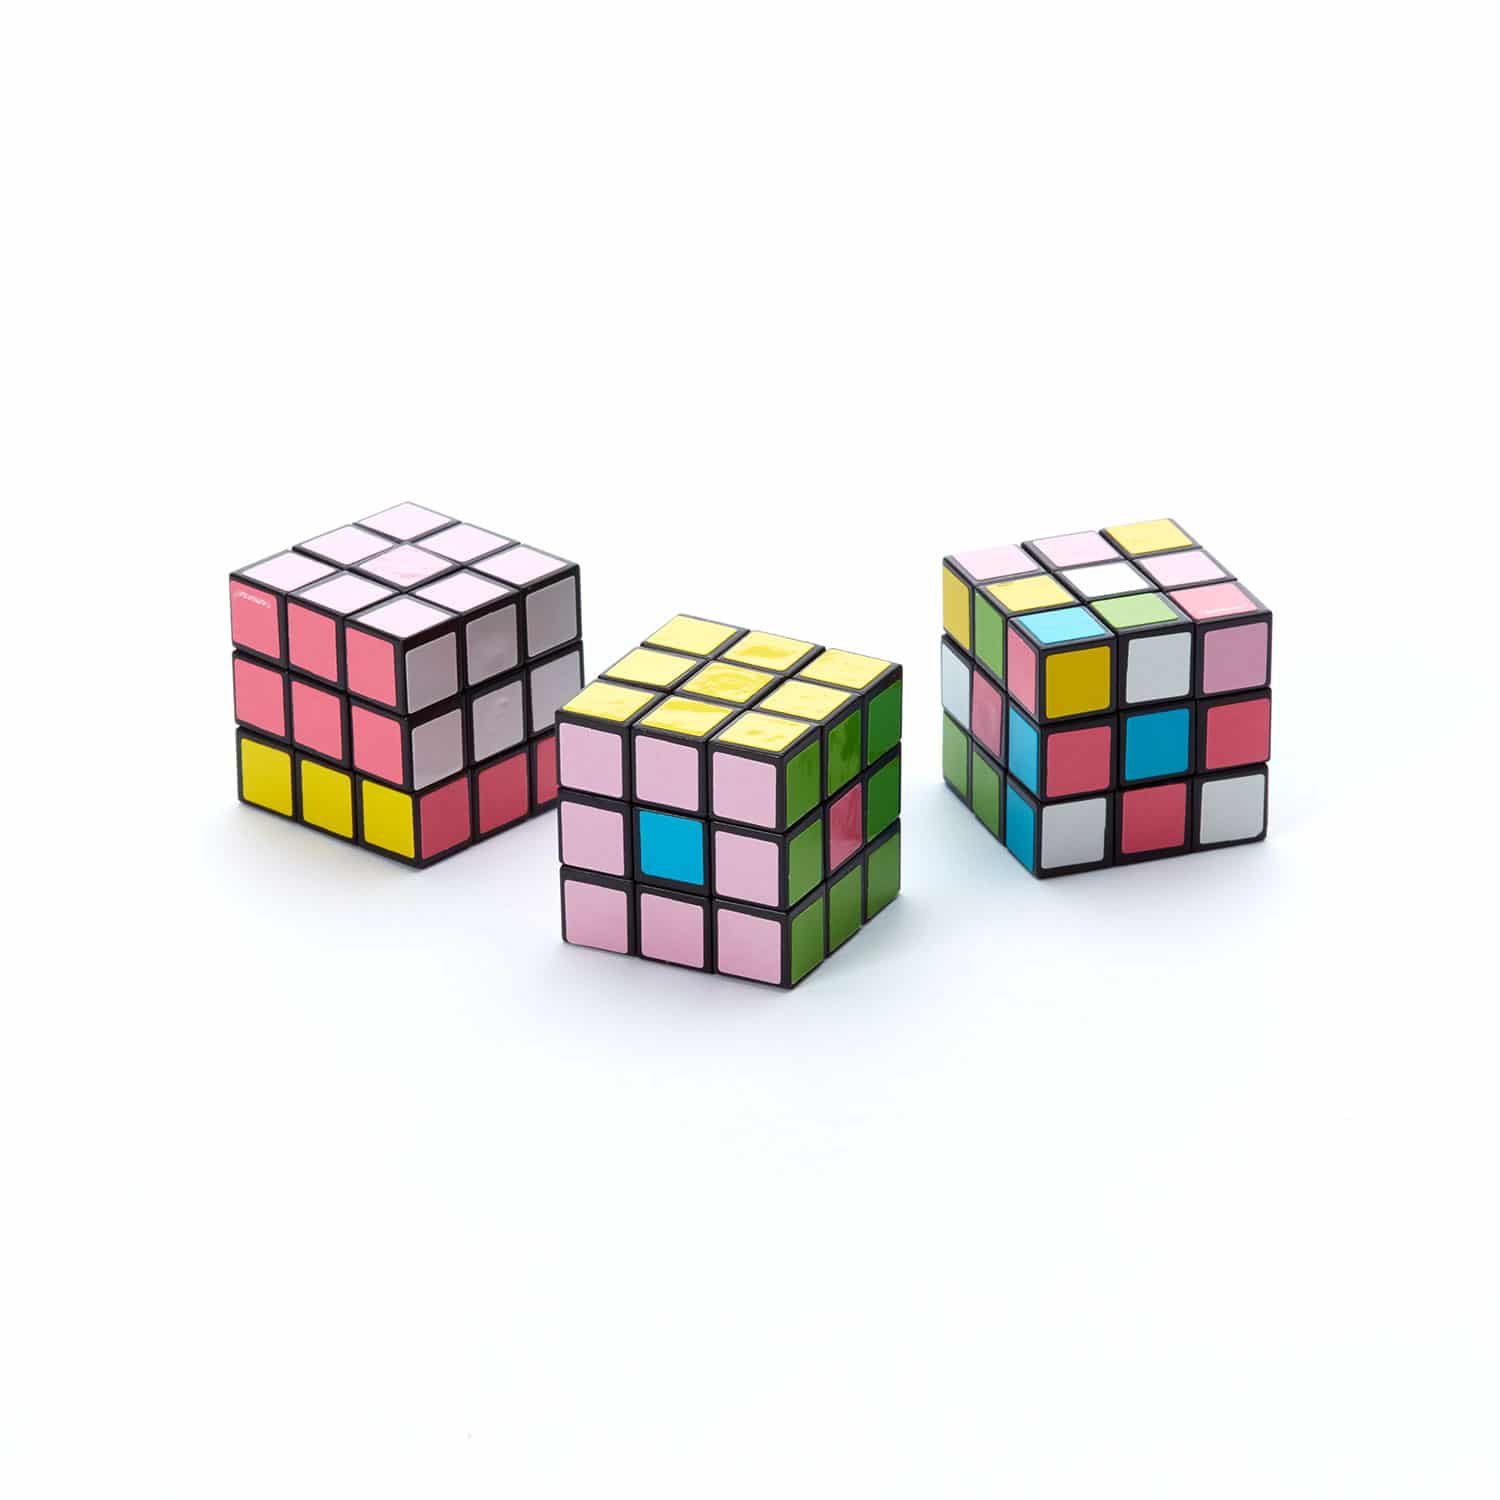 World's Smallest Rubik's Cube: An itty-bitty brain buster.